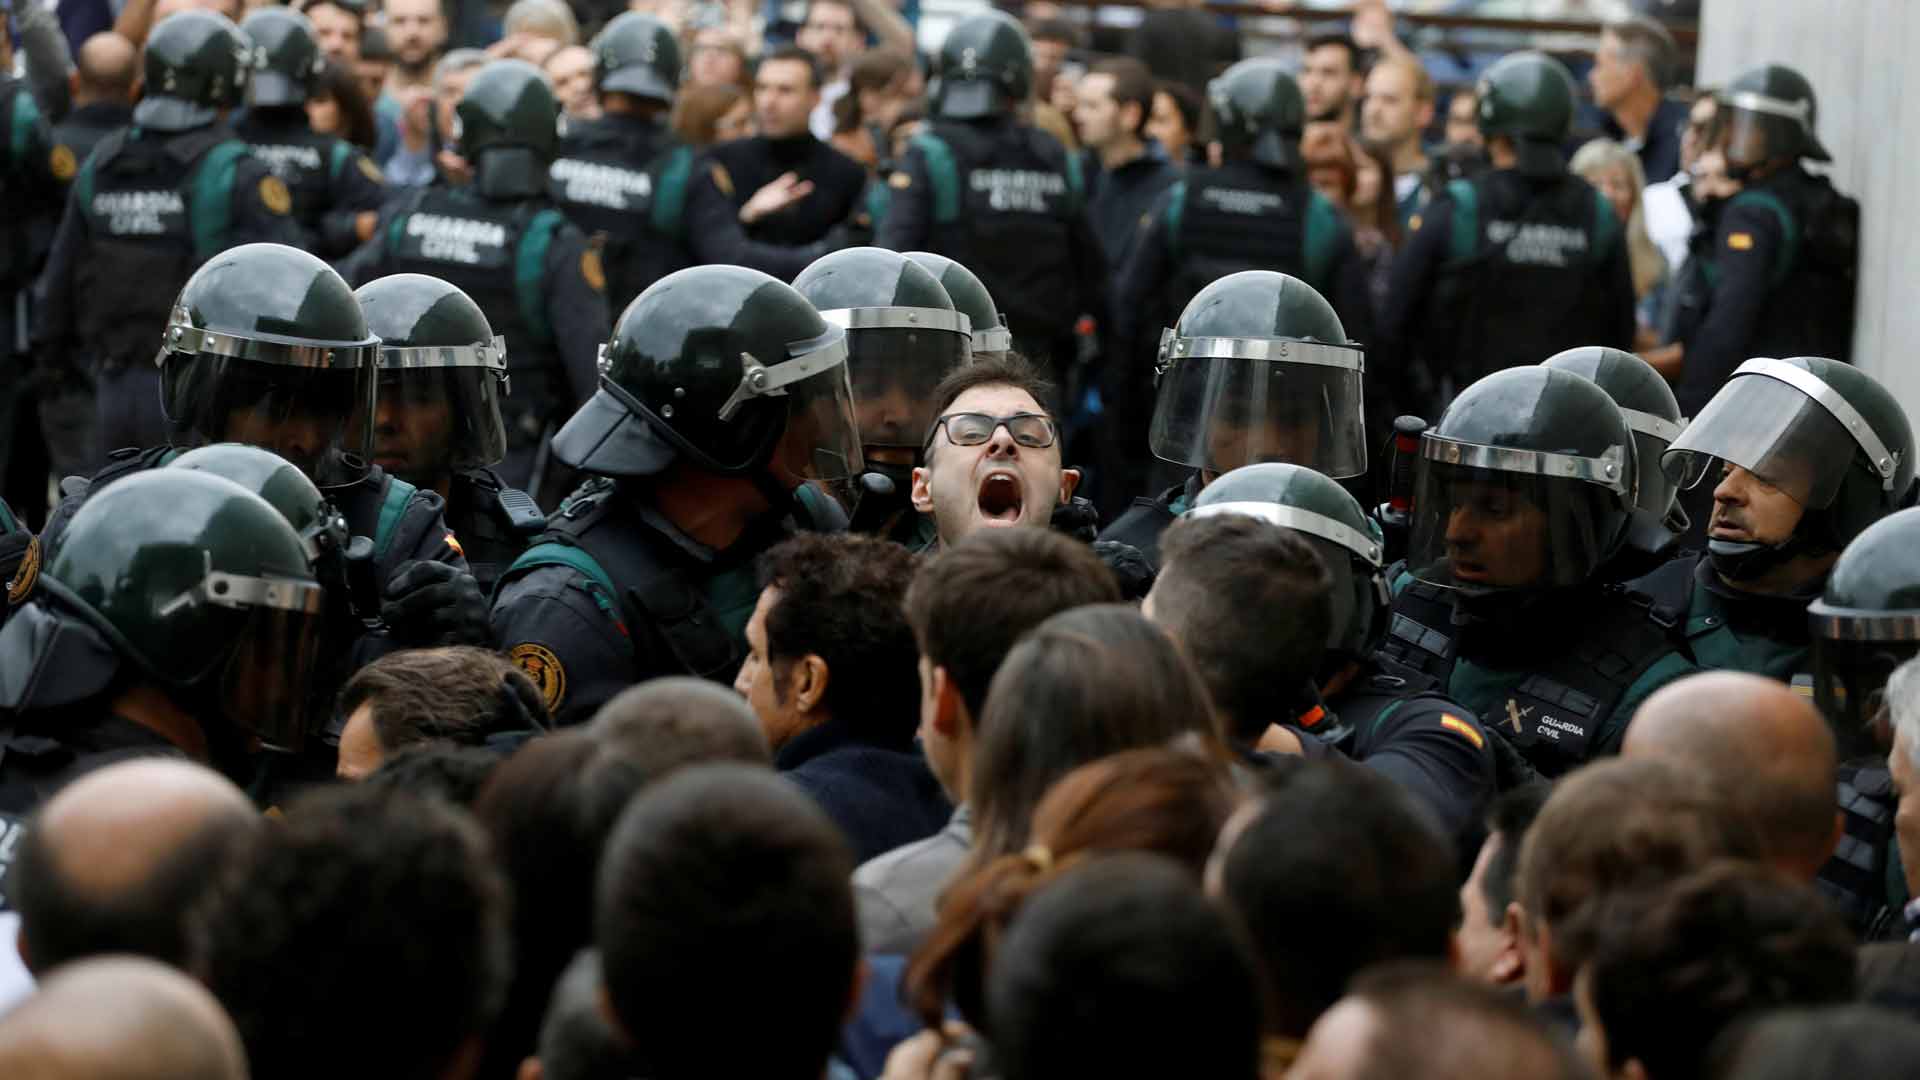 Al menos 844 personas han requerido asistencia médica en los incidentes de Cataluña, según el Govern